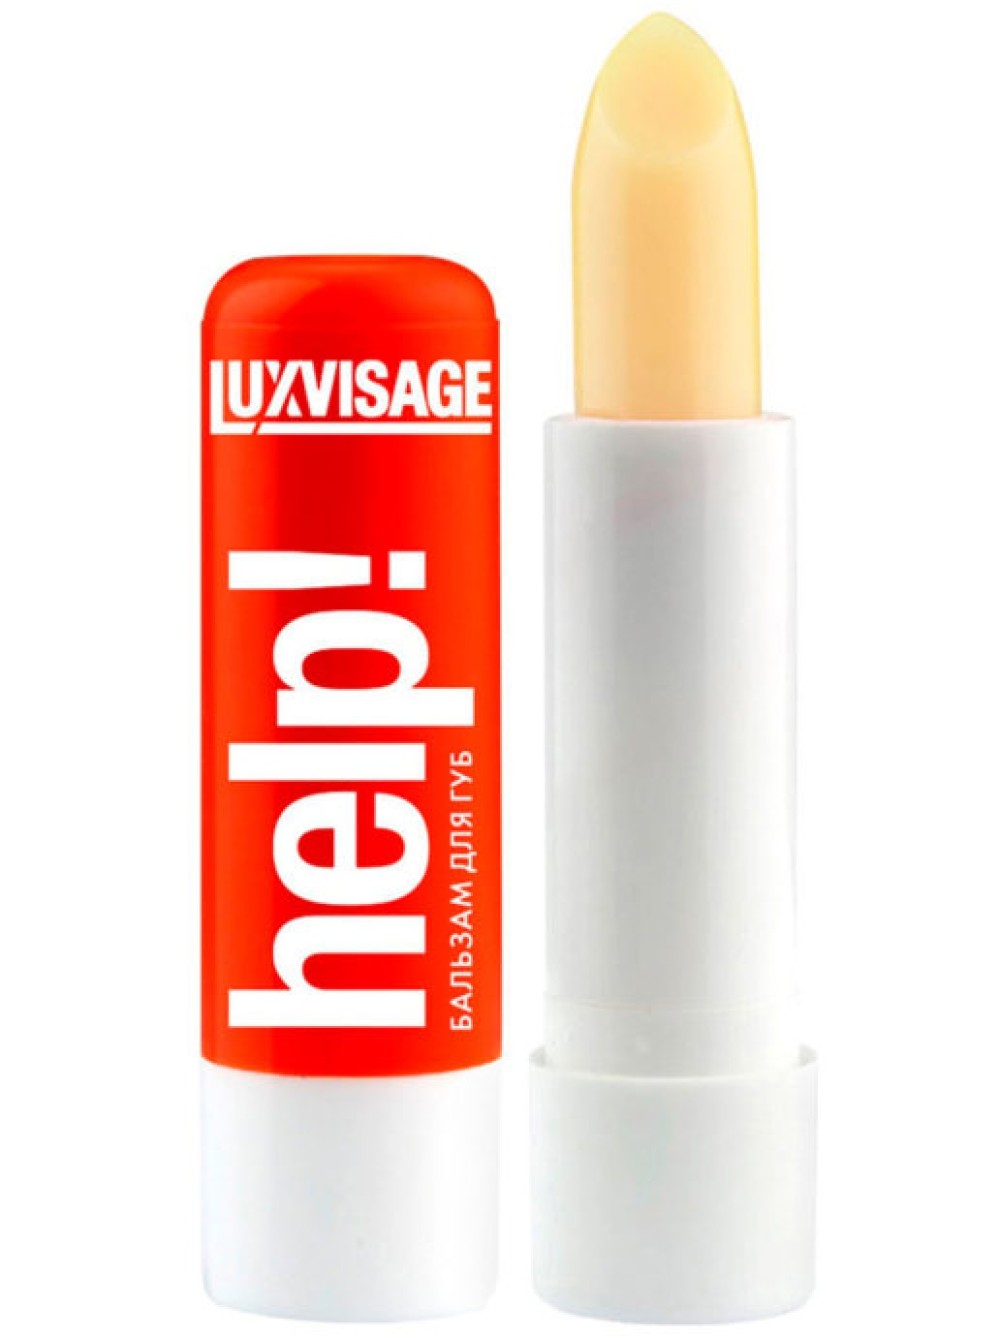 Luxvisage icon. LUXVISAGE бальзам для губ help! (Без блистера). Бальзам для губ help Lux visage. Бальзам для губ LUXVISAGE help. Бальзам для губ 102 Люкс визаж.